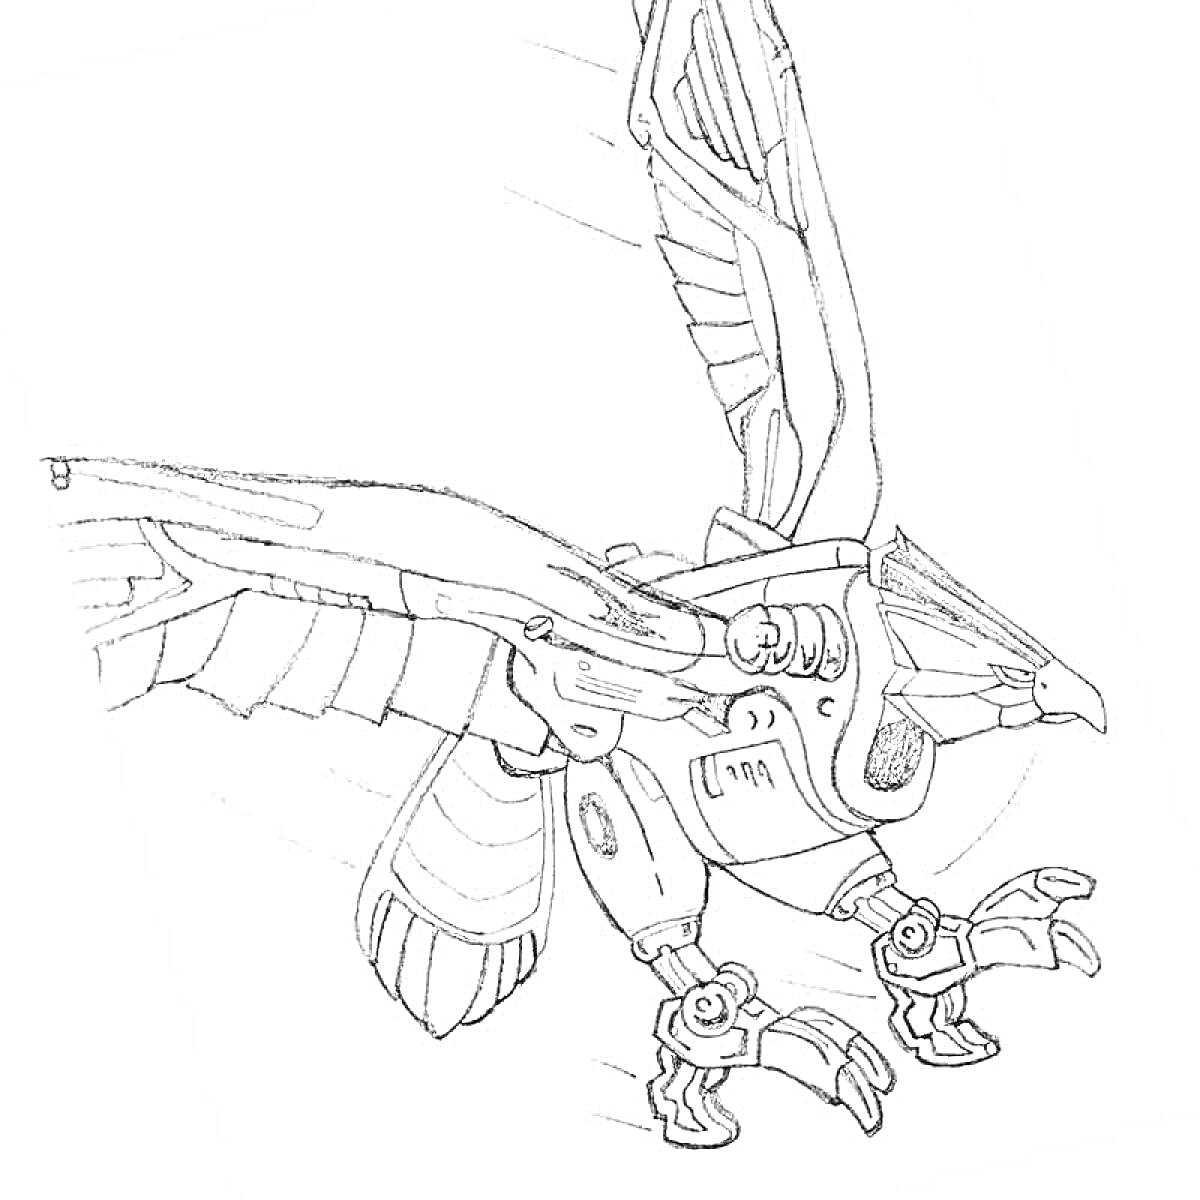 Скричер-робот в форме орла с расправленными крыльями